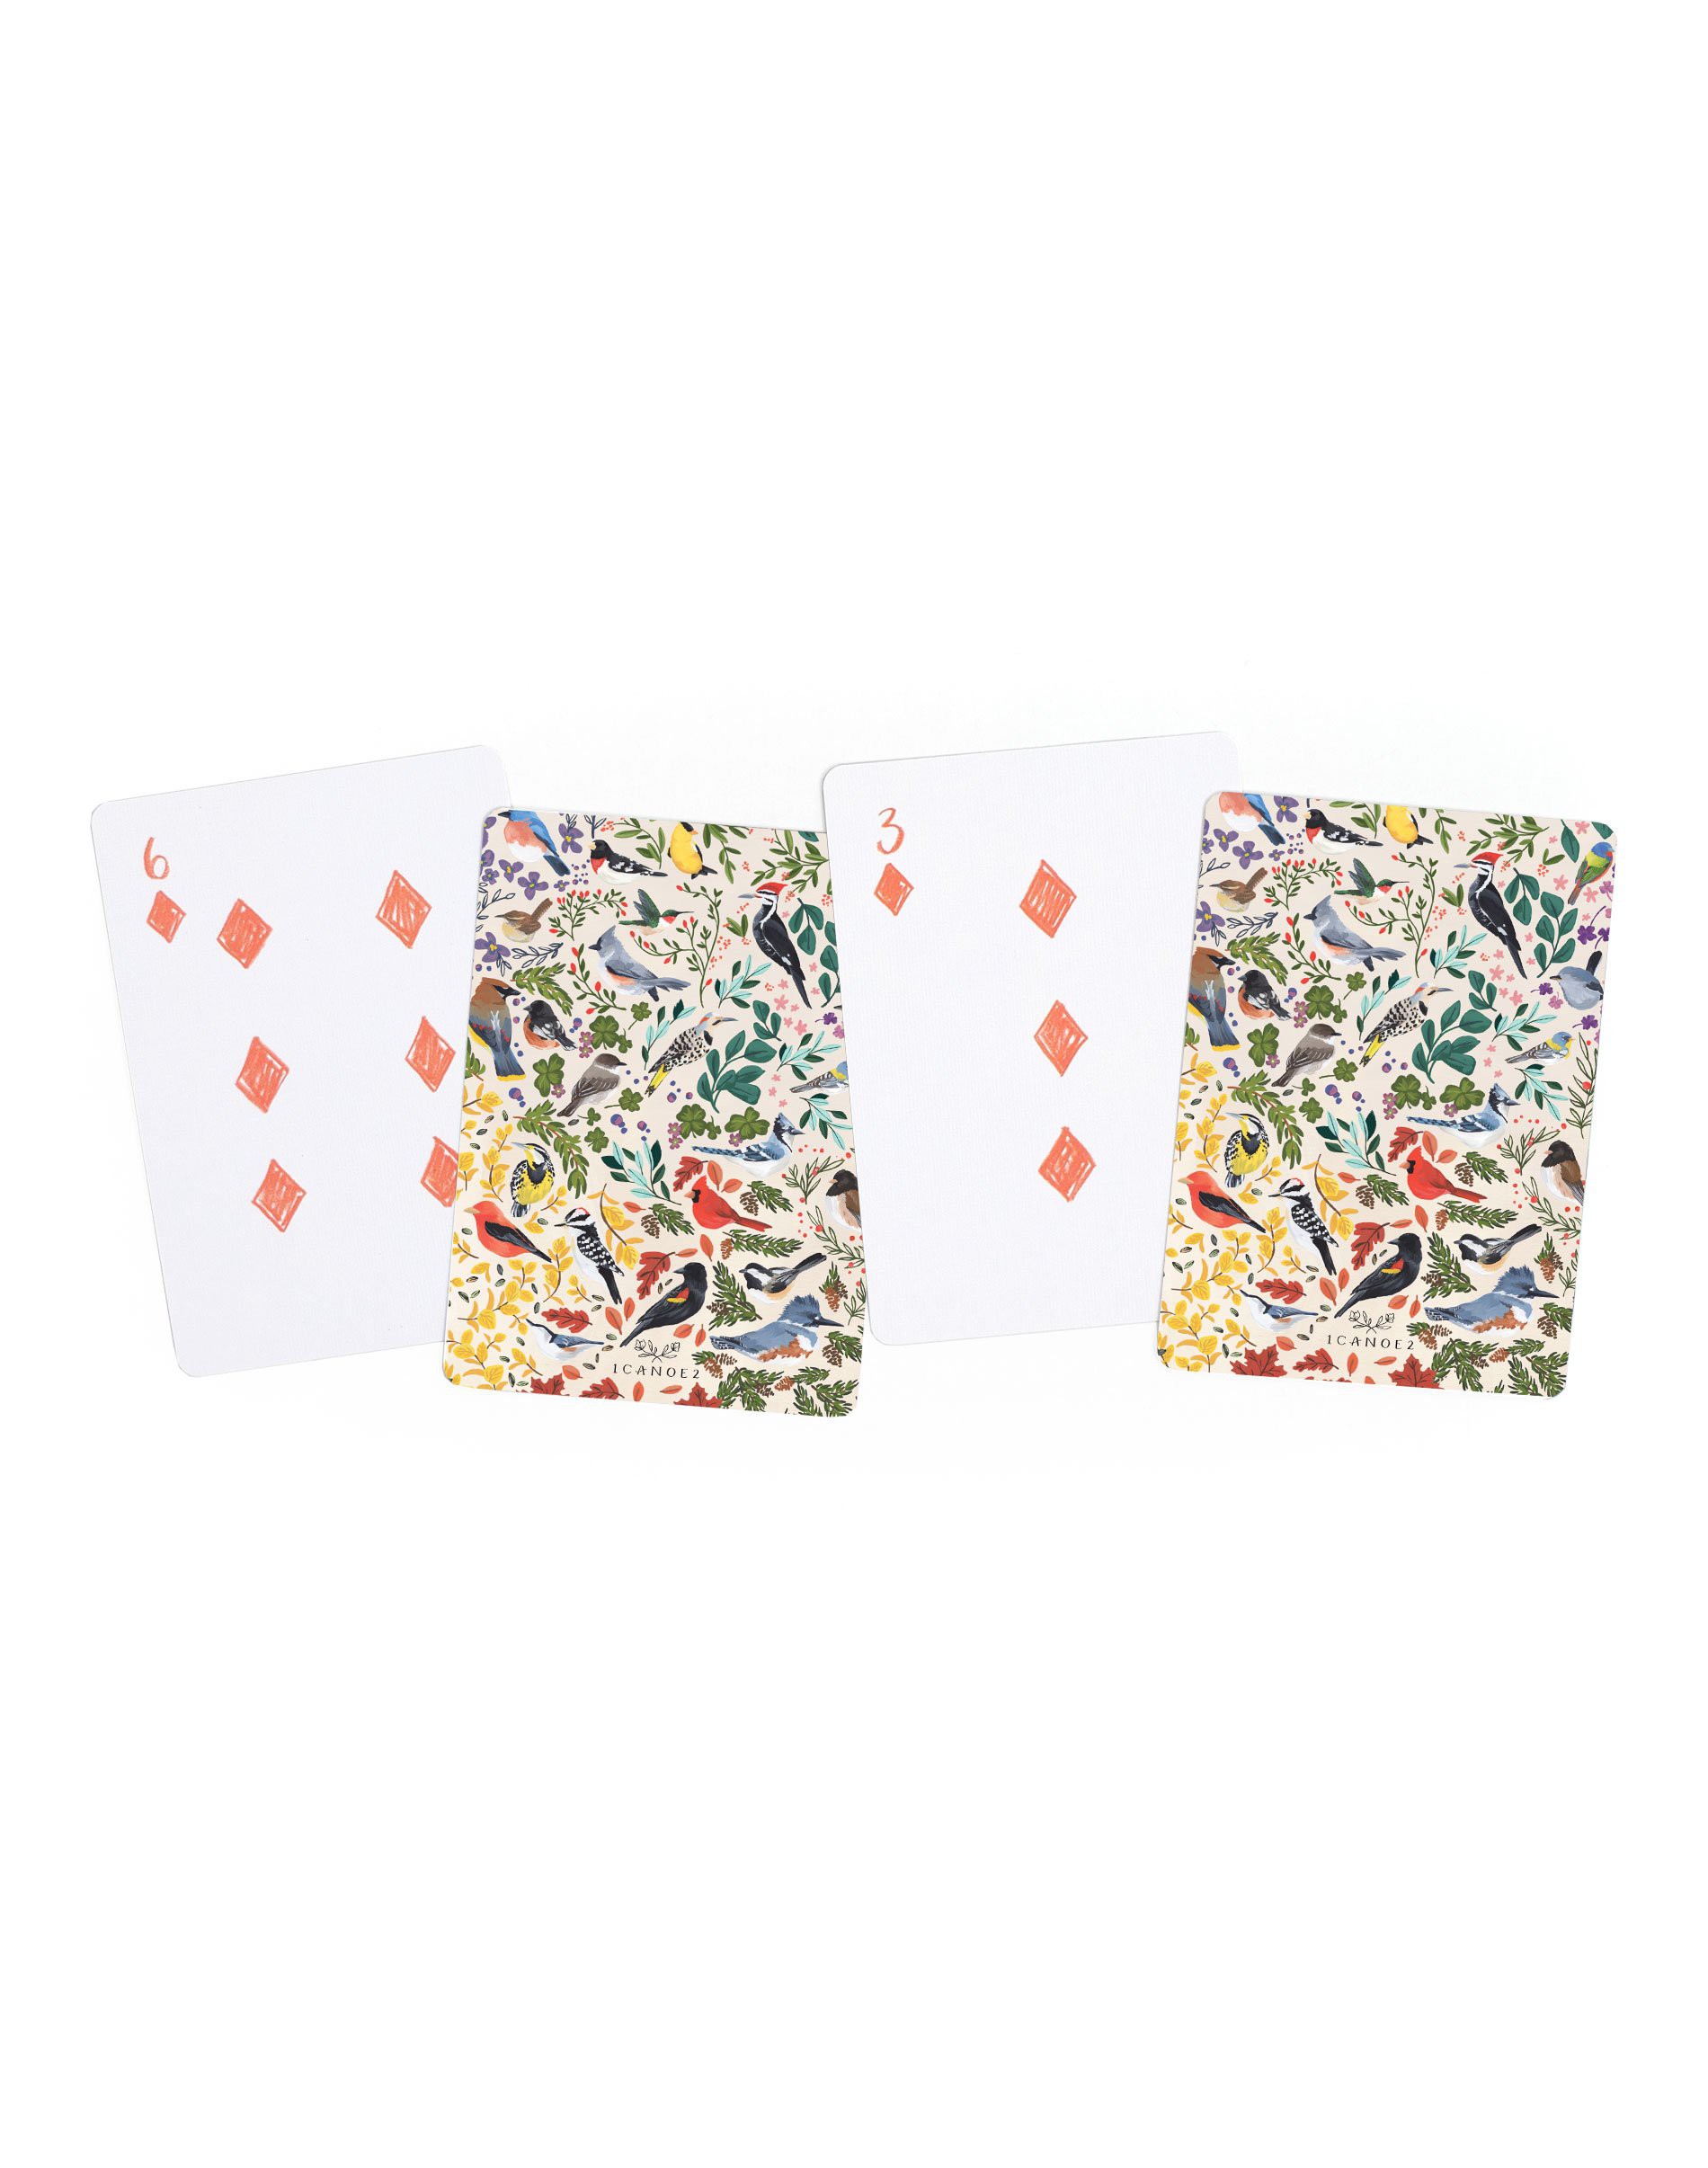 Playing Card Decks, Set of 2